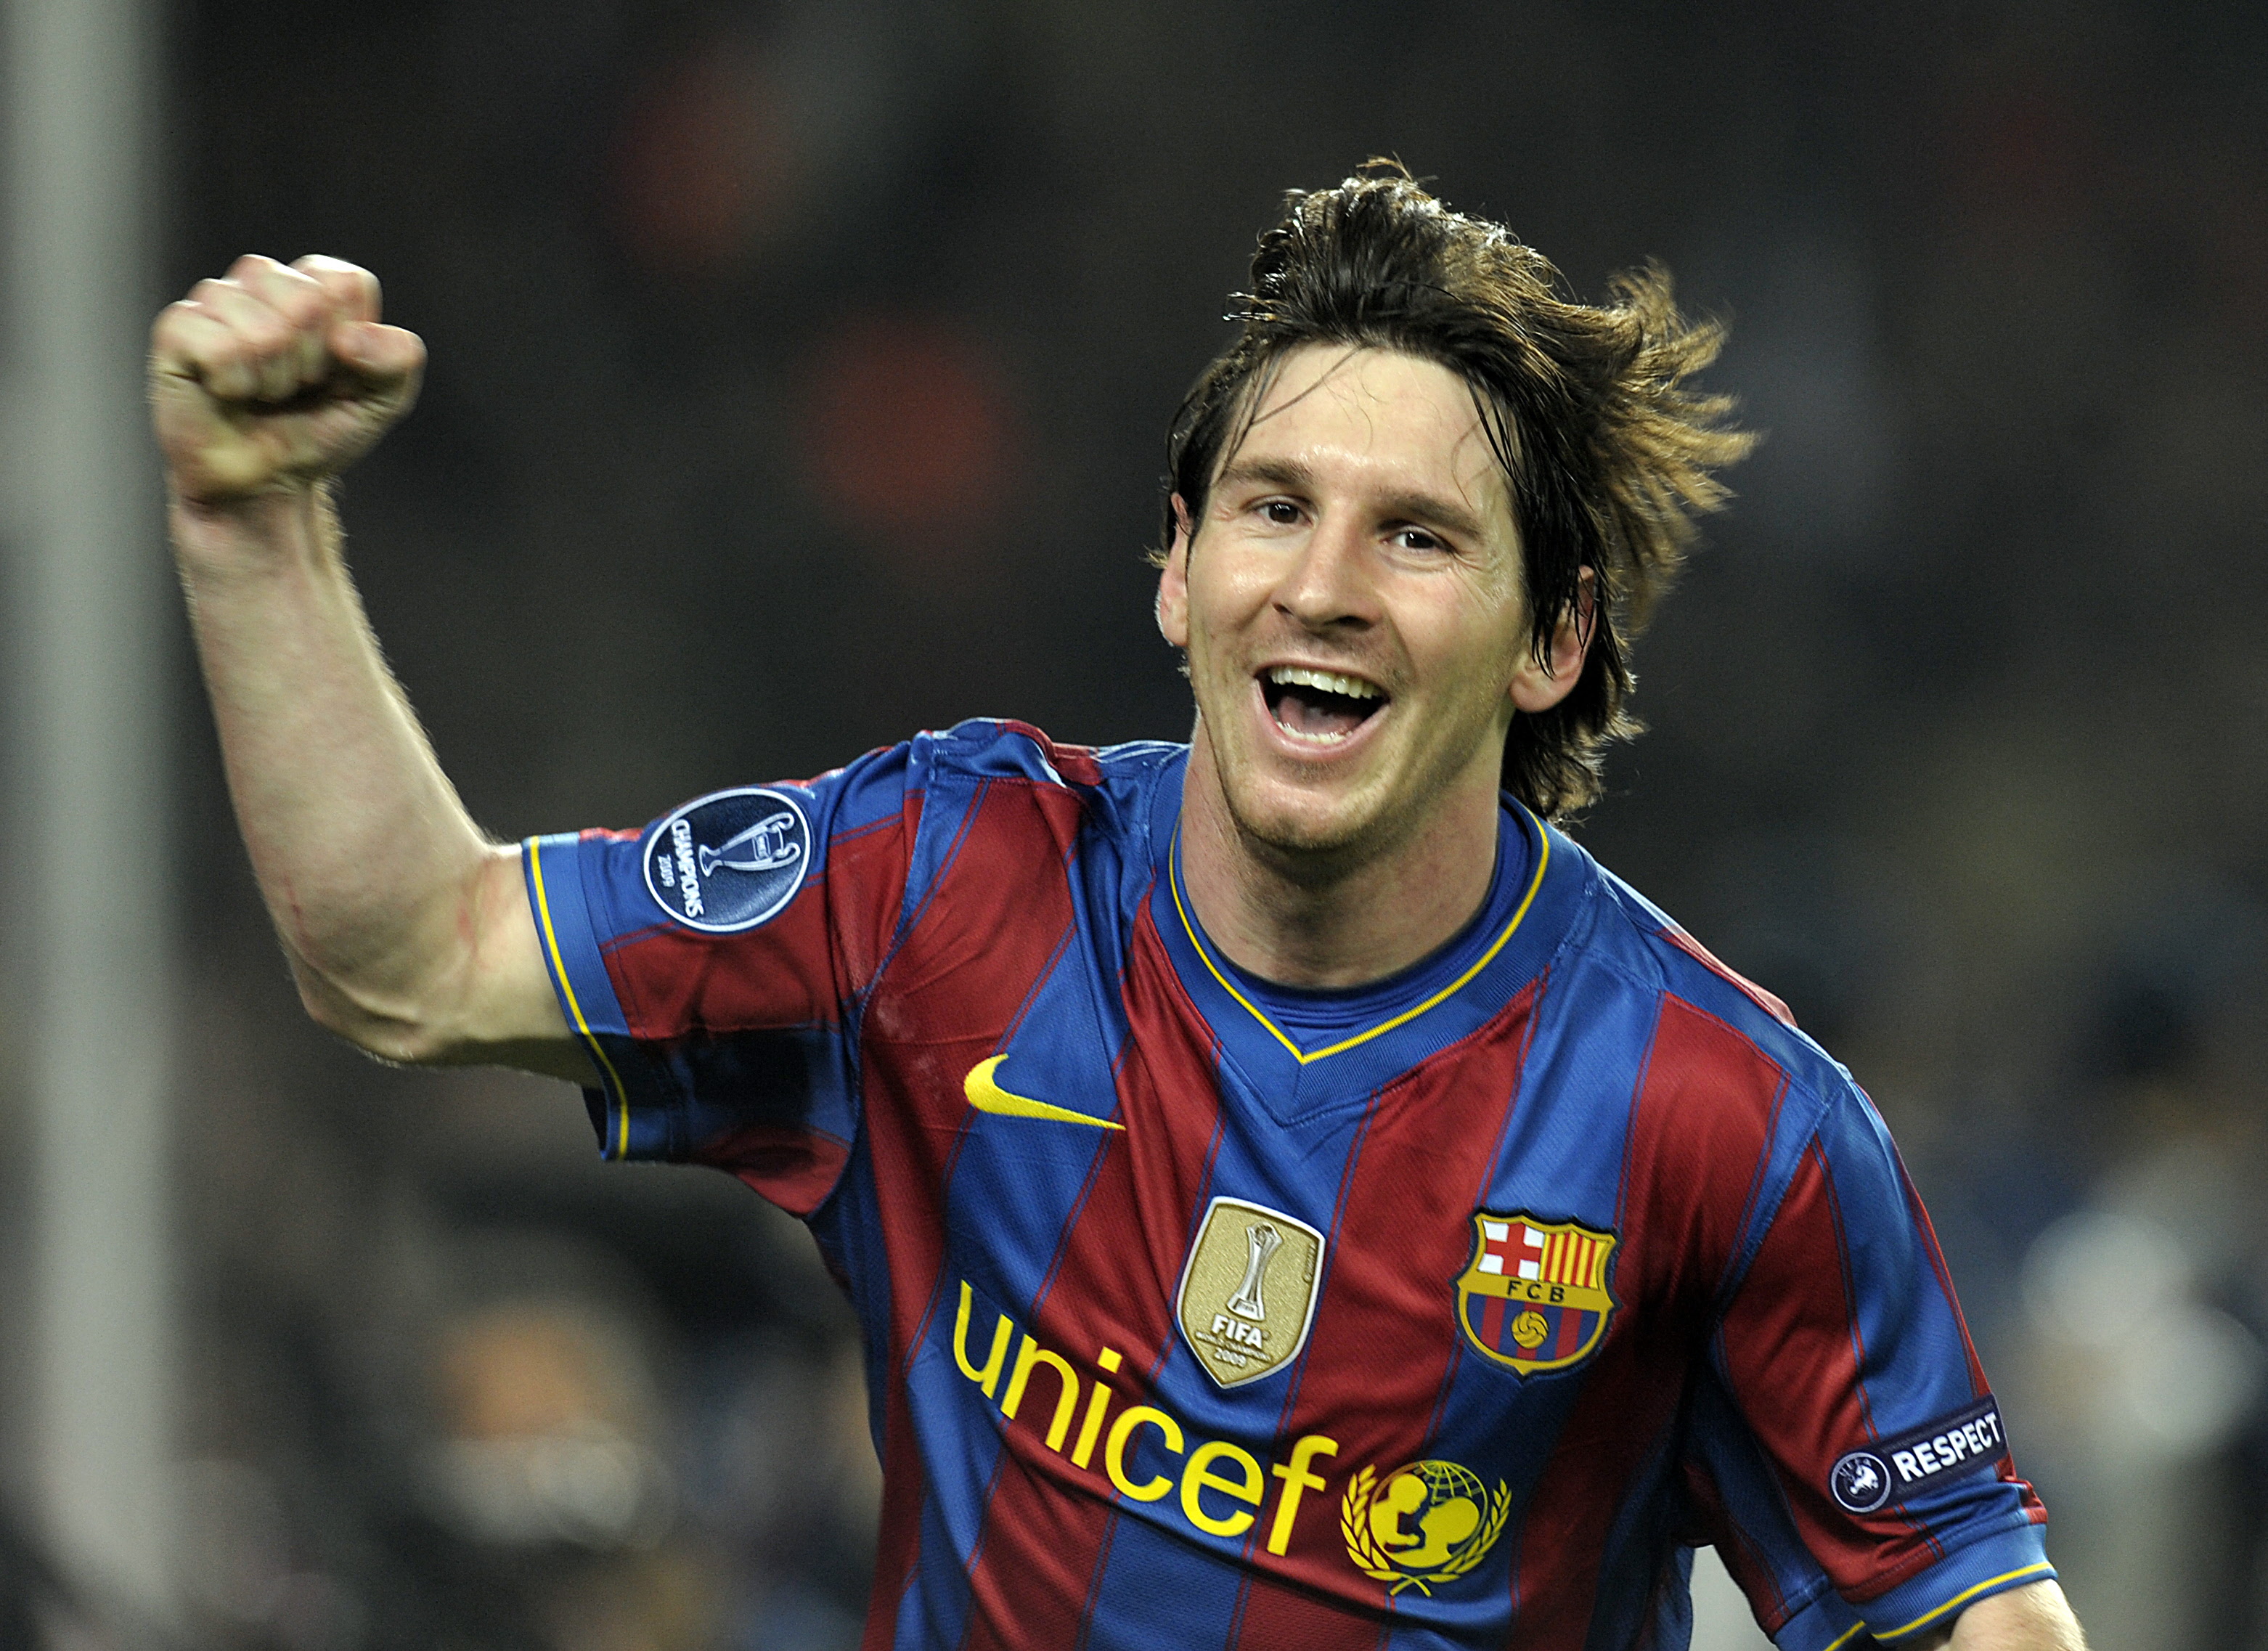 34 títulos, 778 jogos e 672 gols: os números superlativos de Messi com a  camisa do Barça